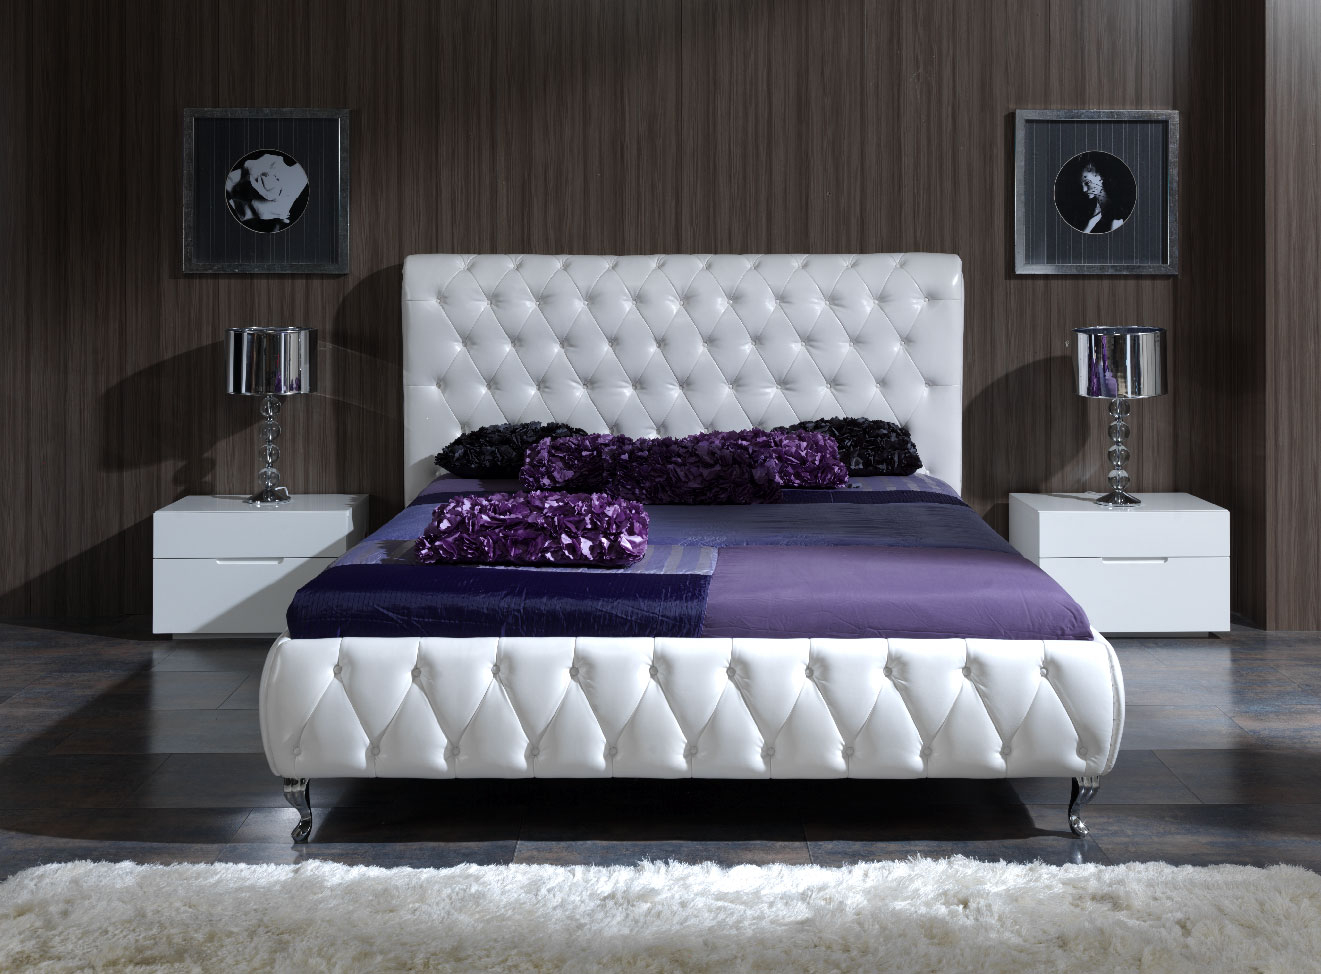 Modern Bedroom Furnitures Bedroom Furniture Sets King Modern throughout measurements 1321 X 974